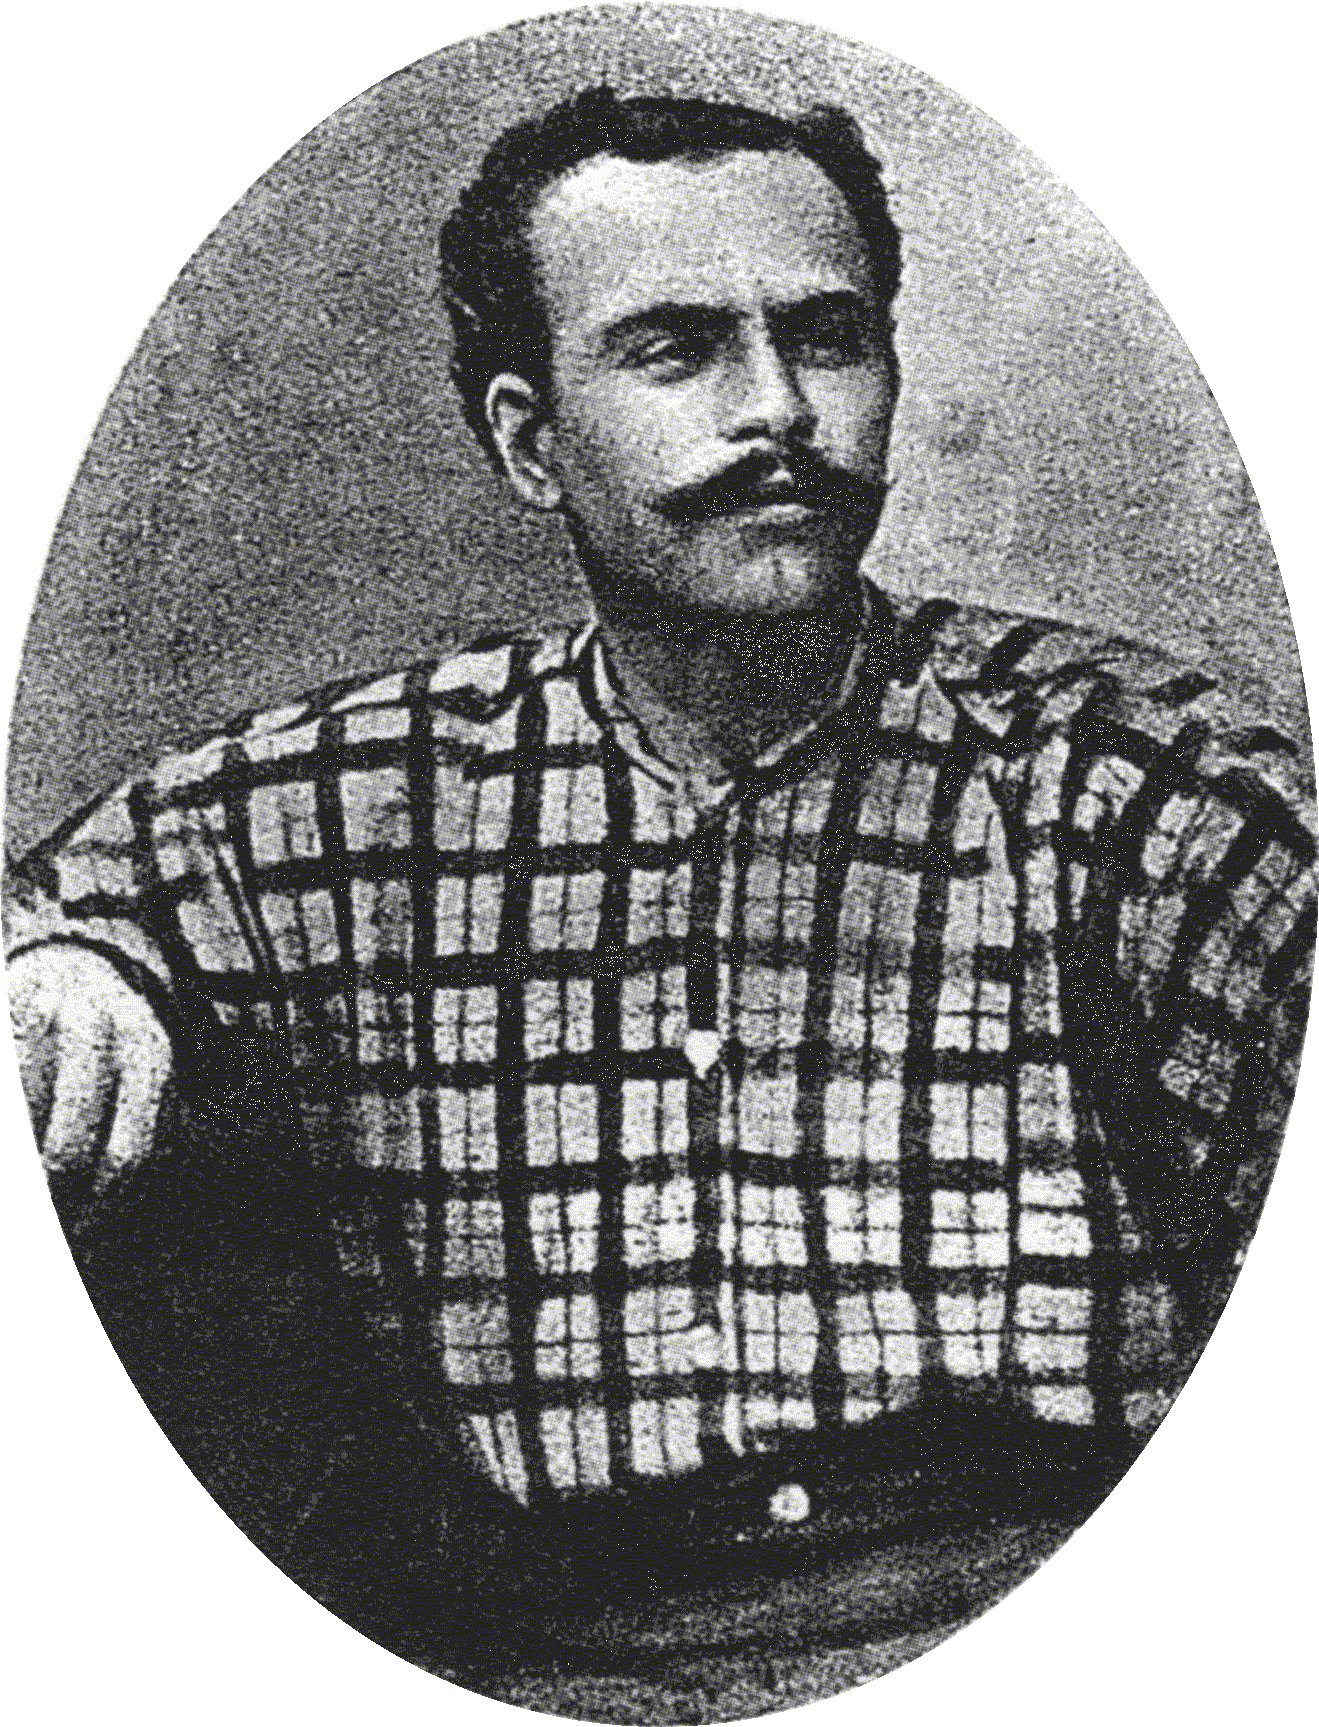 Gennaro Rubino en 1894. Foto publicada en "L'Illustrazione Italiana" del 23 de novembre de 1902